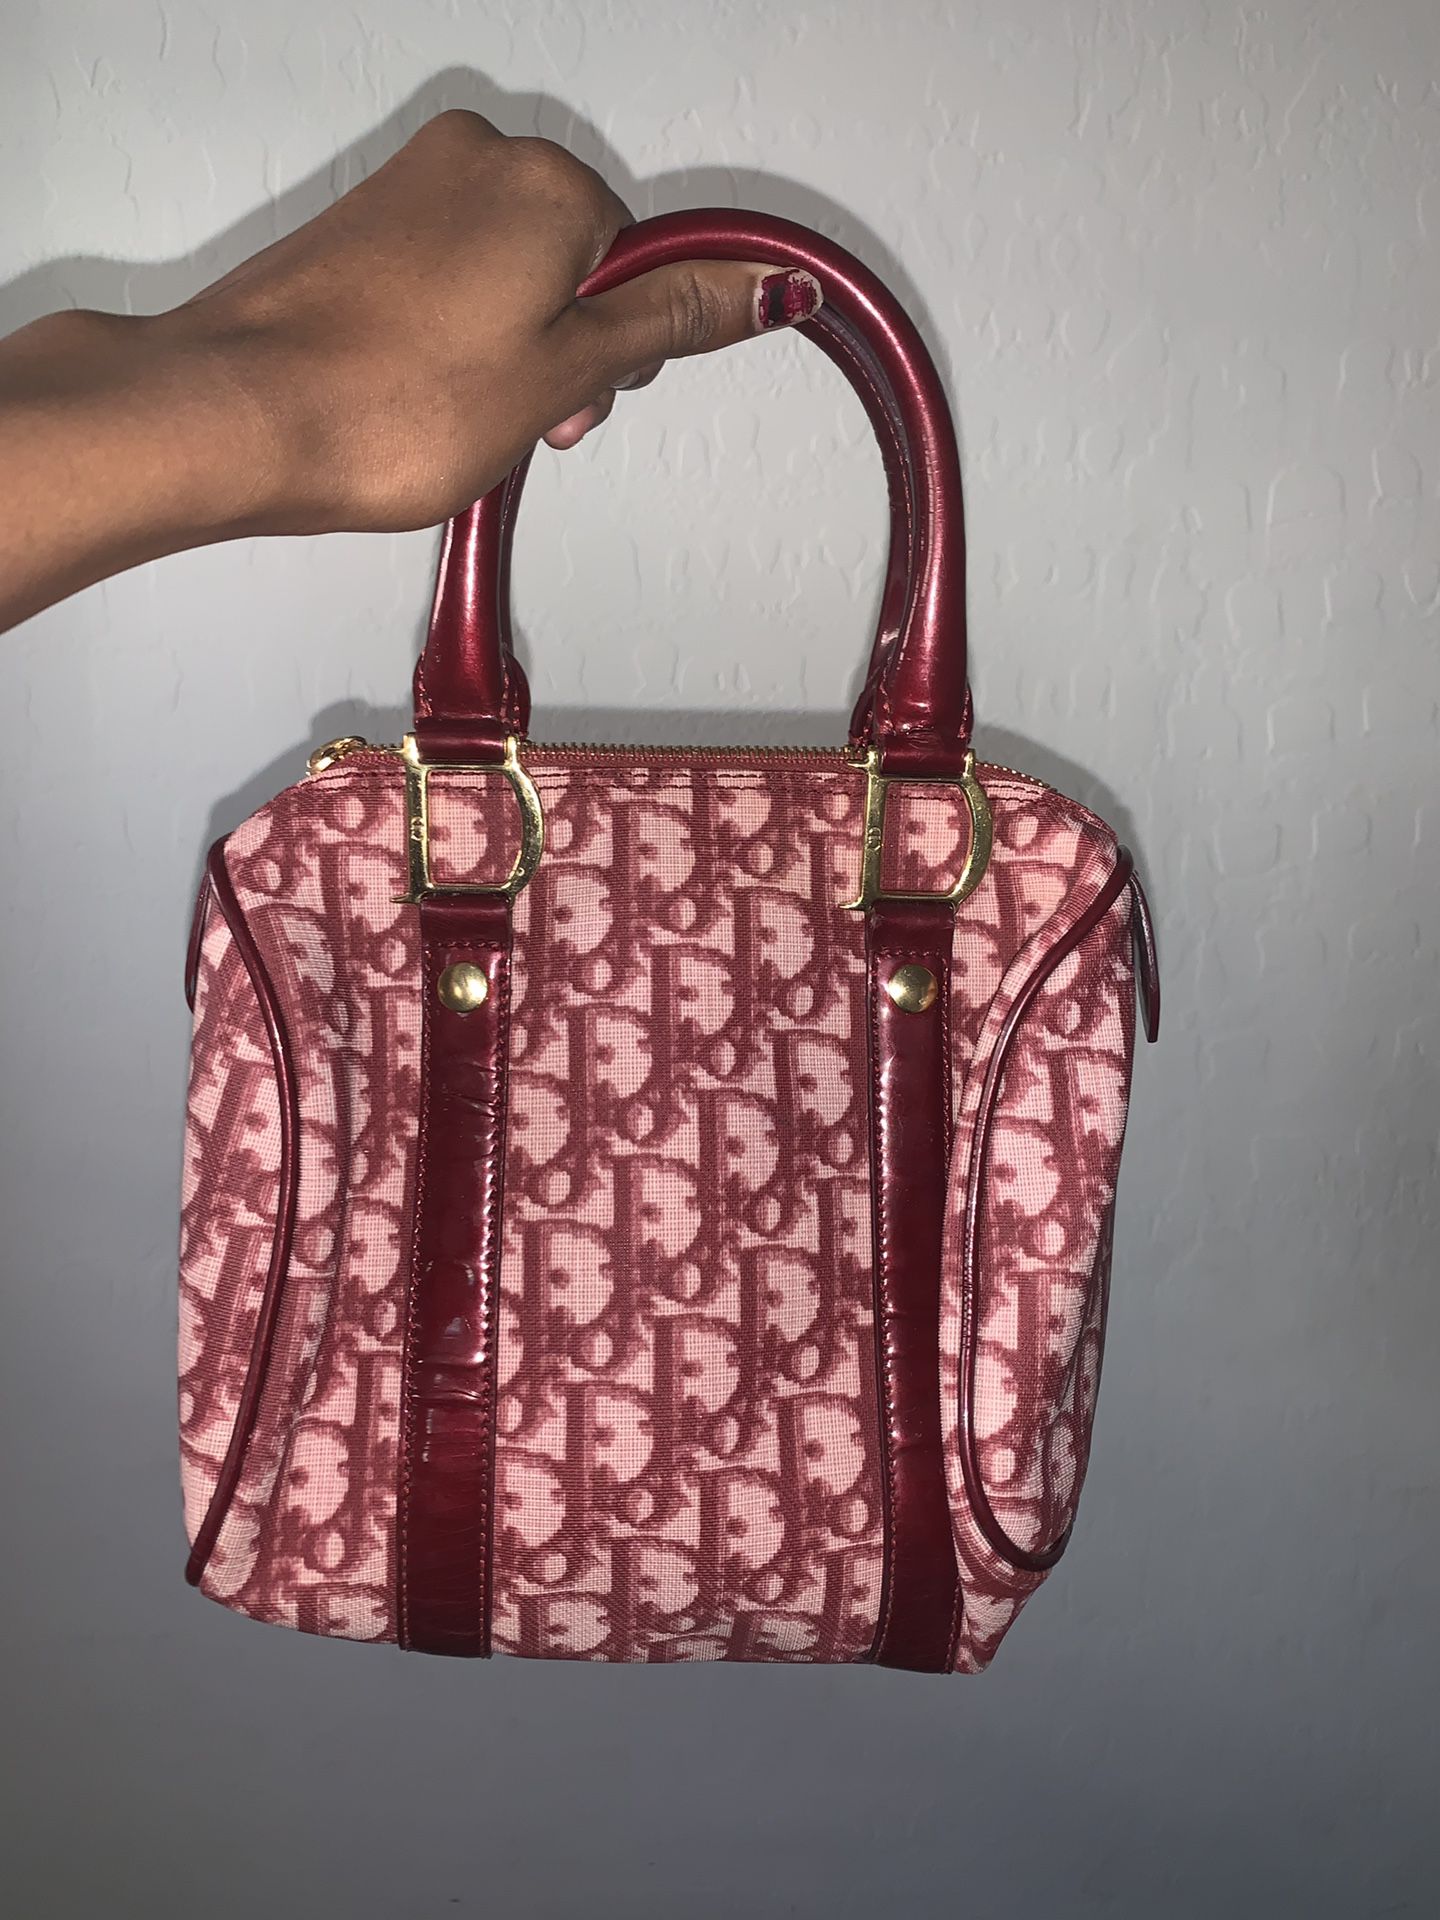 Real Dior Bag 💕💋